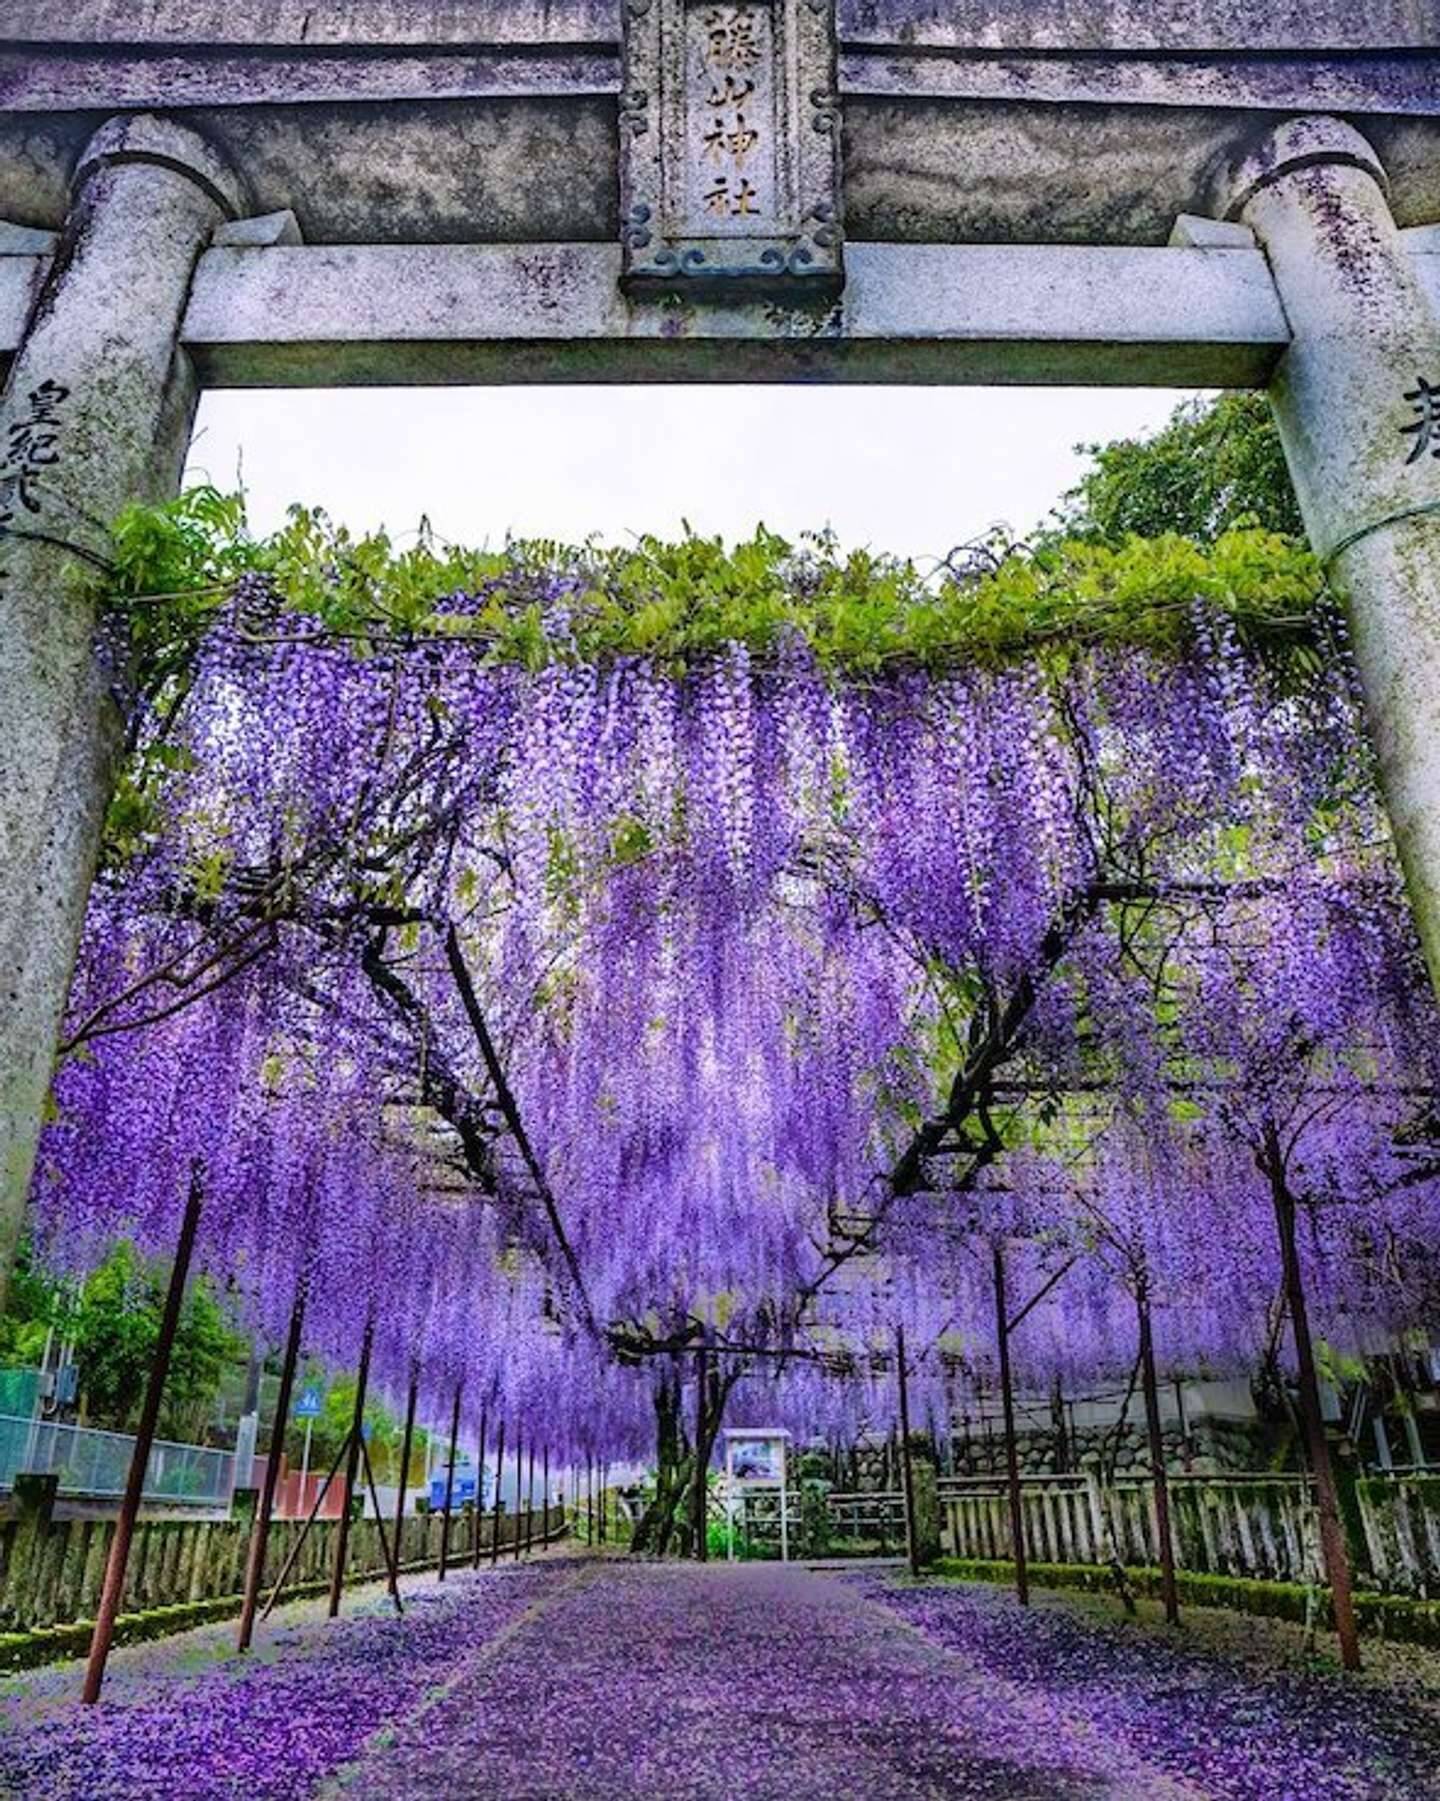 まるで鬼滅の 藤襲山 だ 佐世保 藤山神社に咲く藤が 恐ろしいほど美しい 21年4月13日 エキサイトニュース